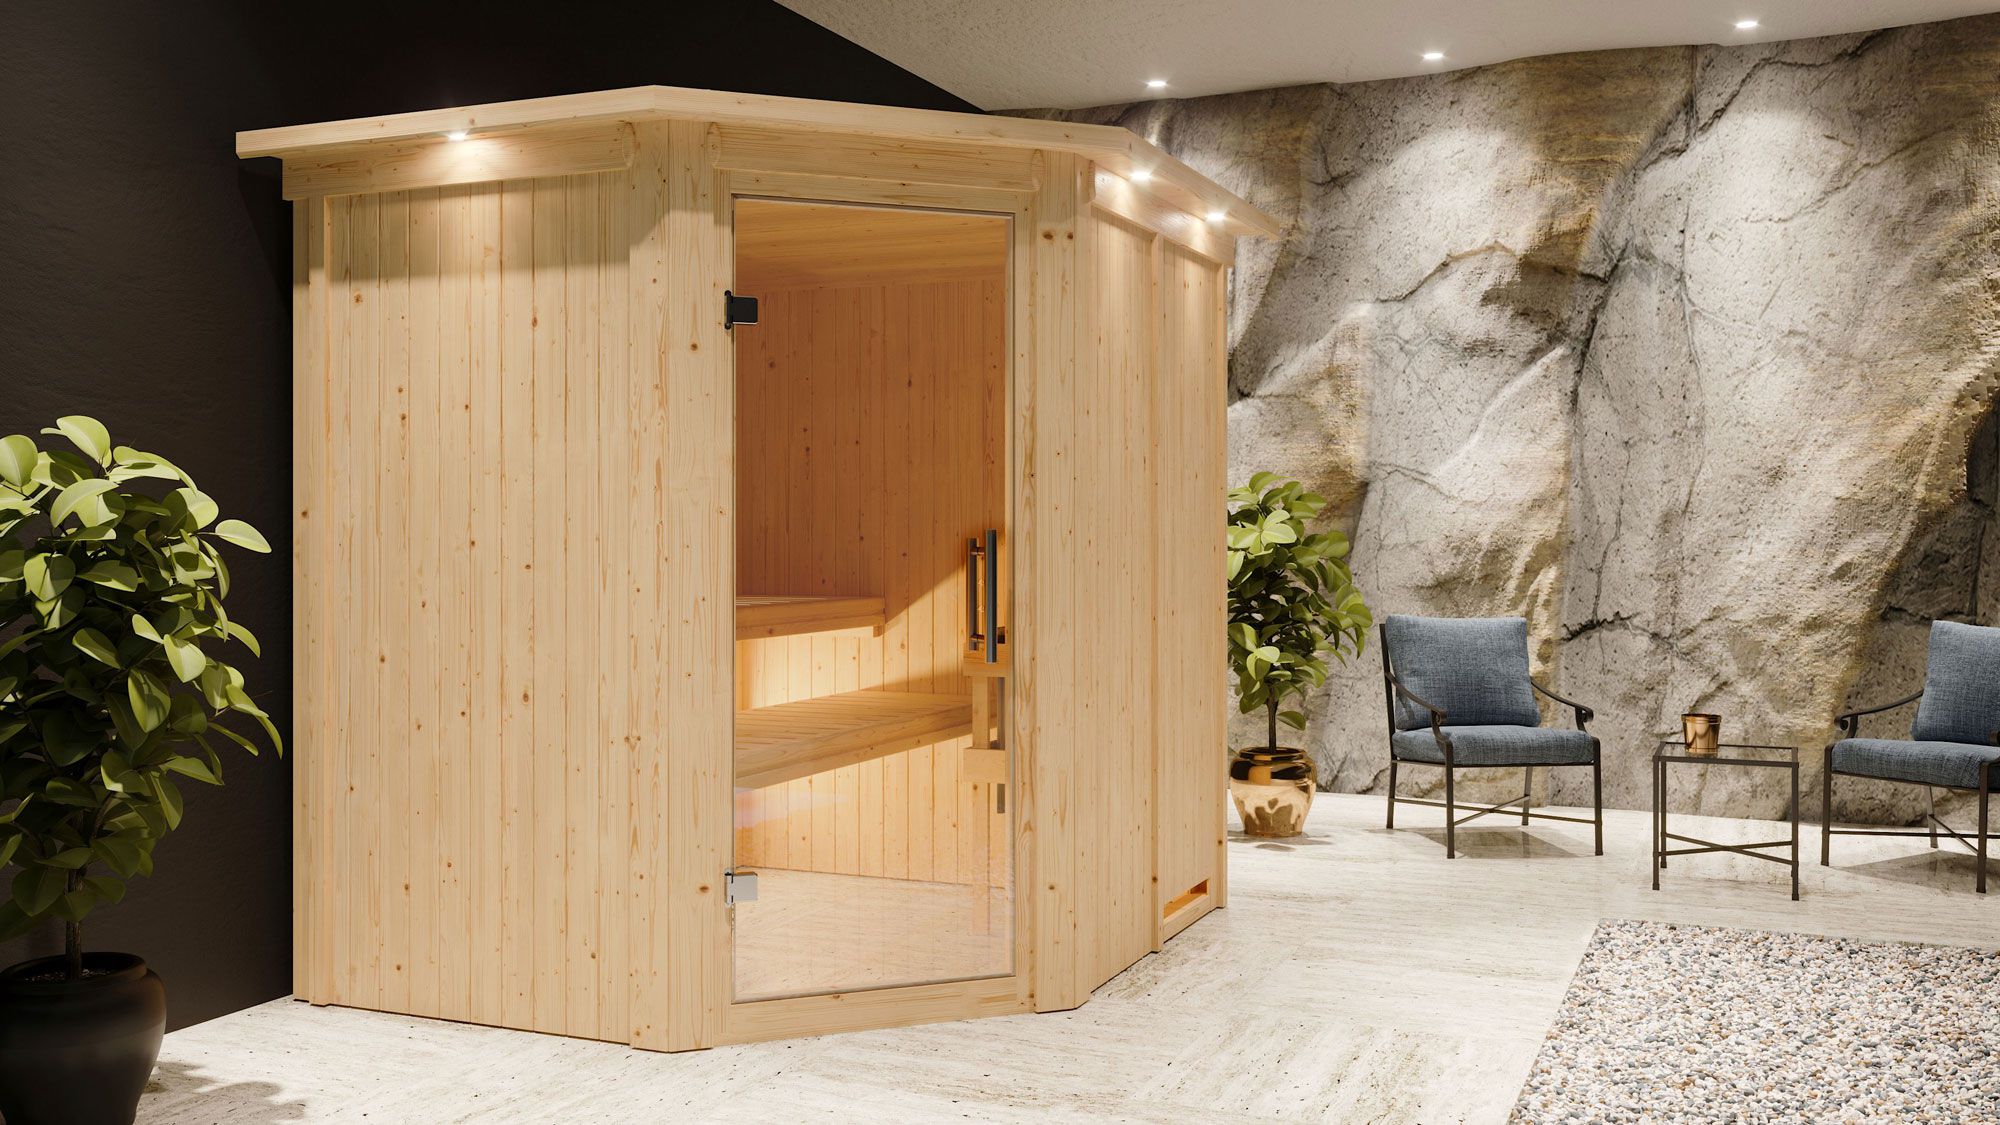 Sauna "Hanko" SET mit Klarglastür, Kranz & Ofen externe Steuerung easy 9 KW - 210 x 184 x 202 cm (B x T x H)